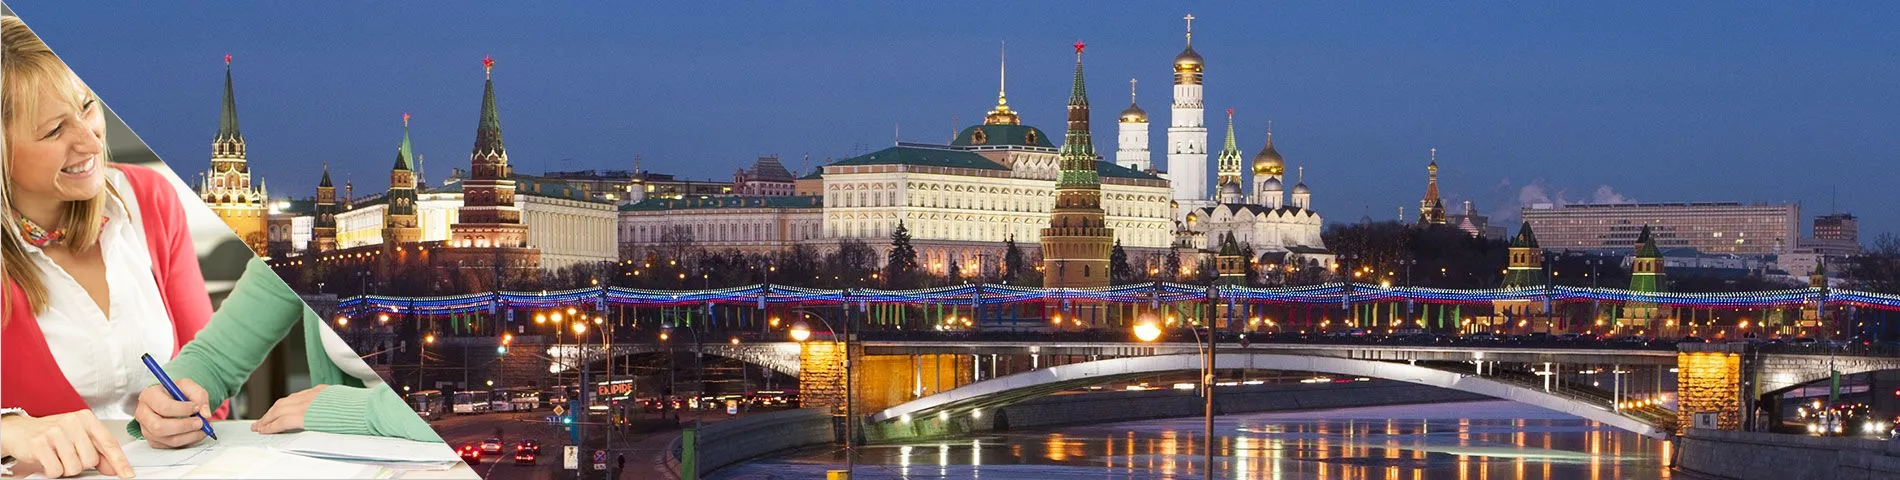 موسكو - ادرس واسكن في منزل مدرسك